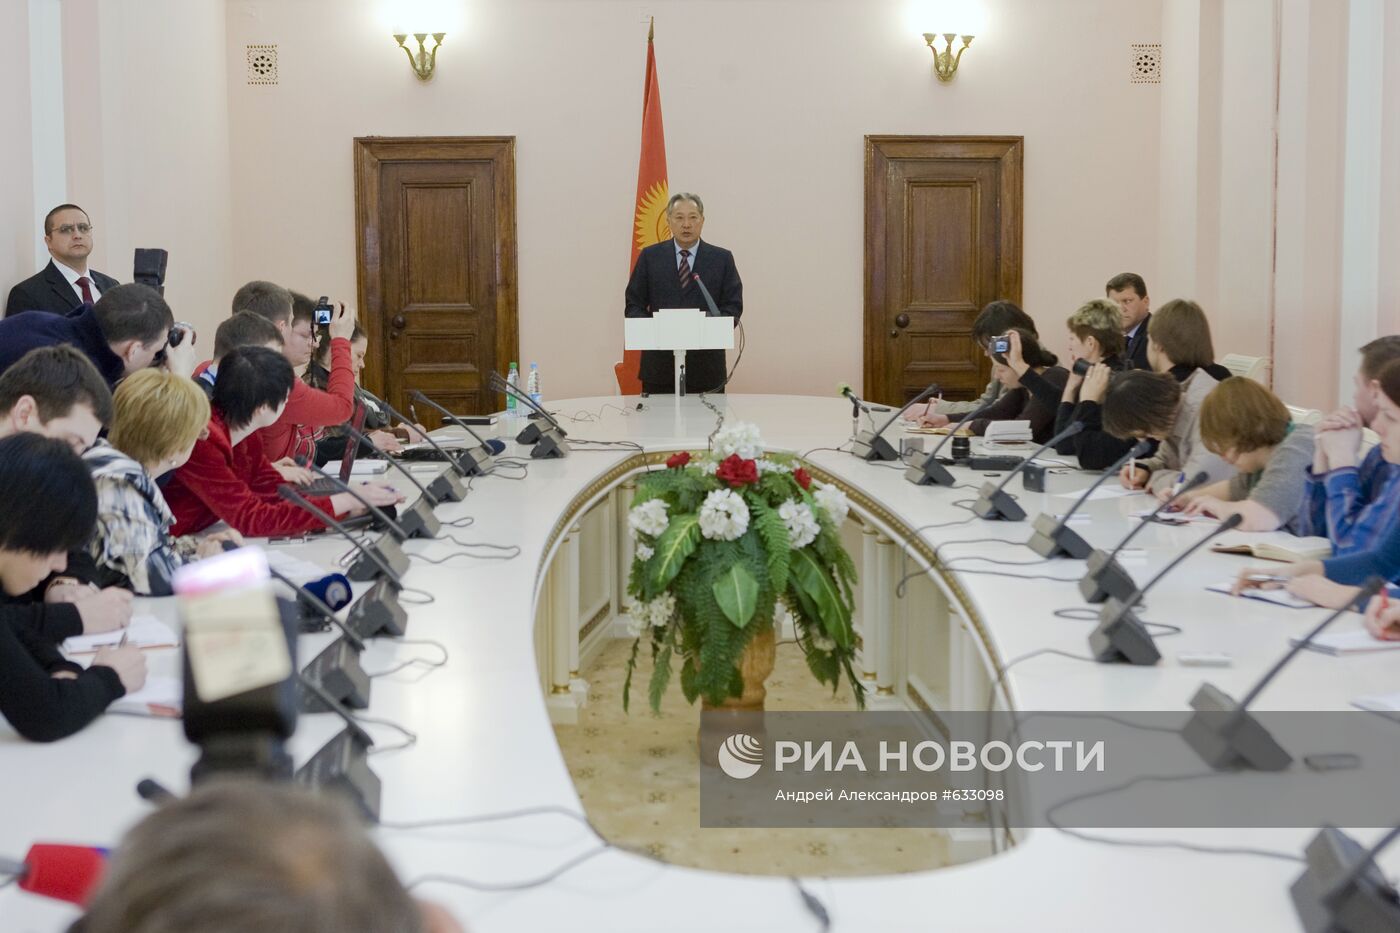 Курманбек Бакиев провел встречу с журналистами в Минске